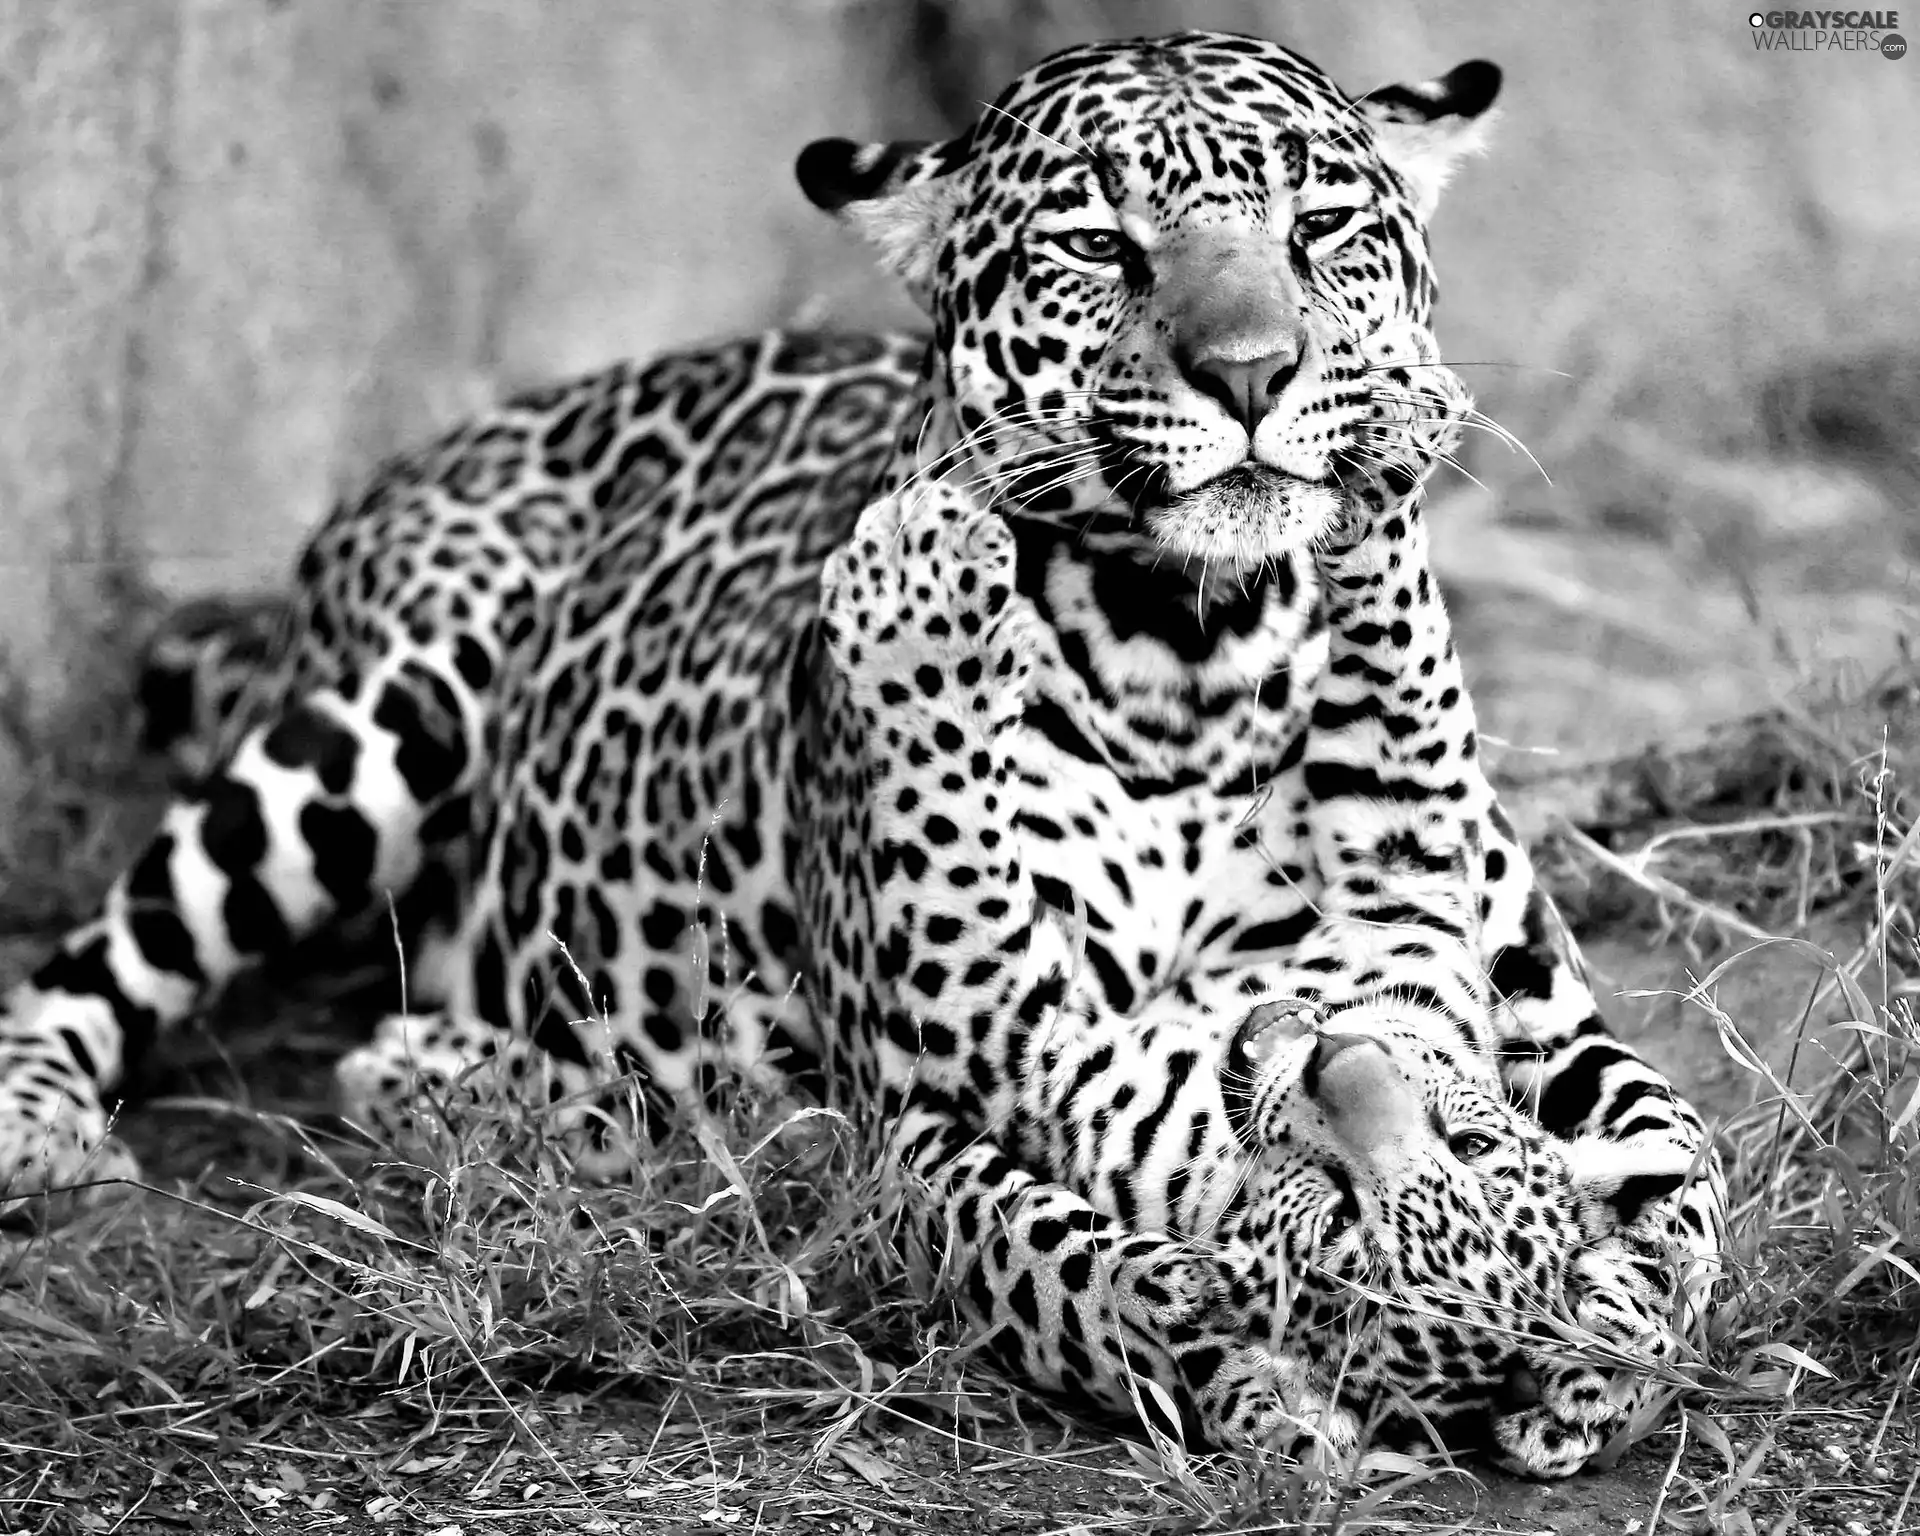 Jaguars, play